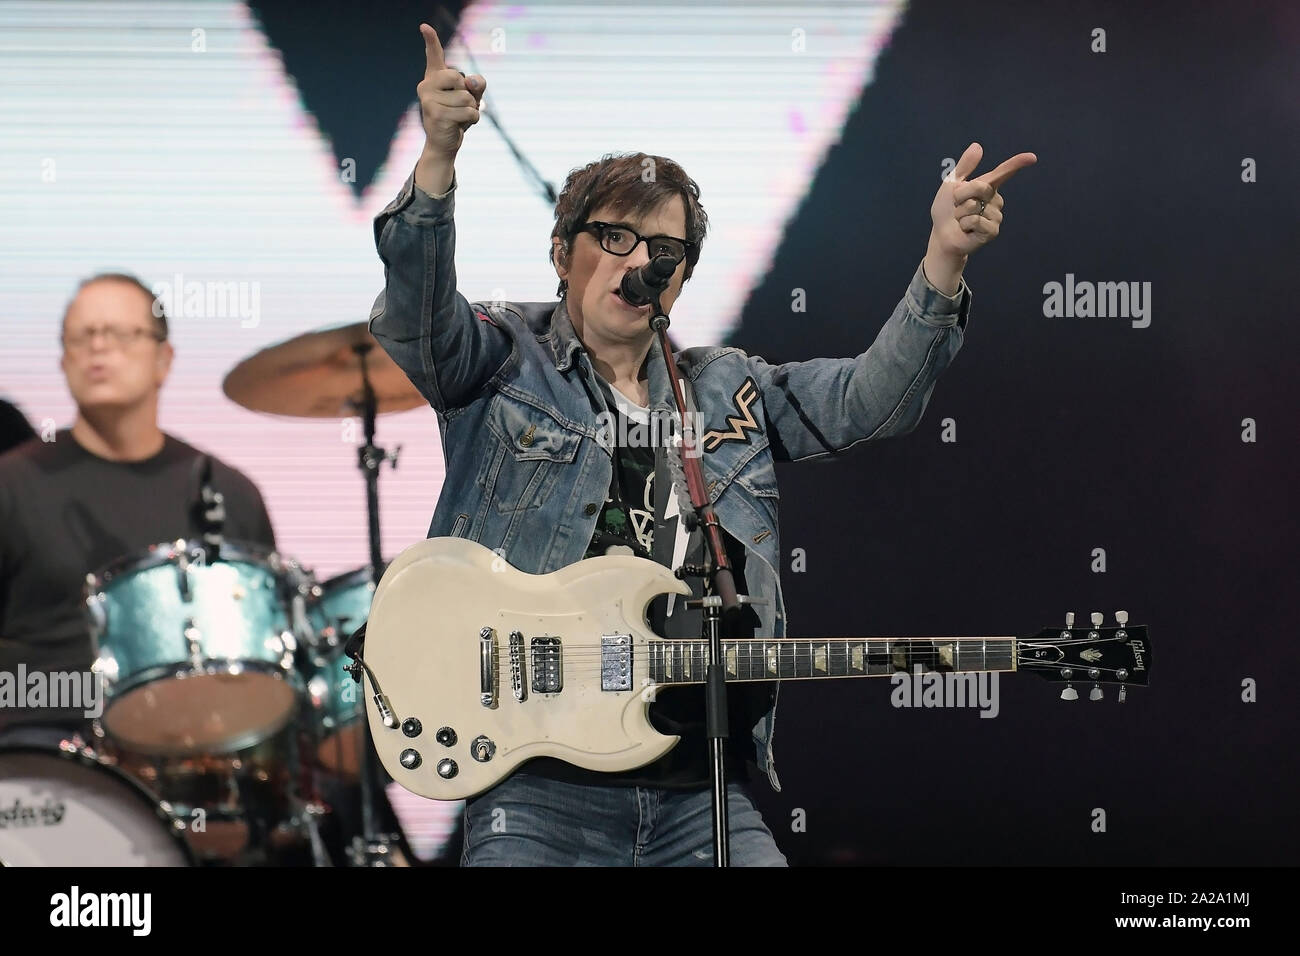 Río de Janeiro, Brasil, 29 de septiembre de 2019. El vocalista y guitarrista Rivers Cuomo de la banda Weezer durante un concierto en el Rock in Rio en Río de Janeiro. Foto de stock